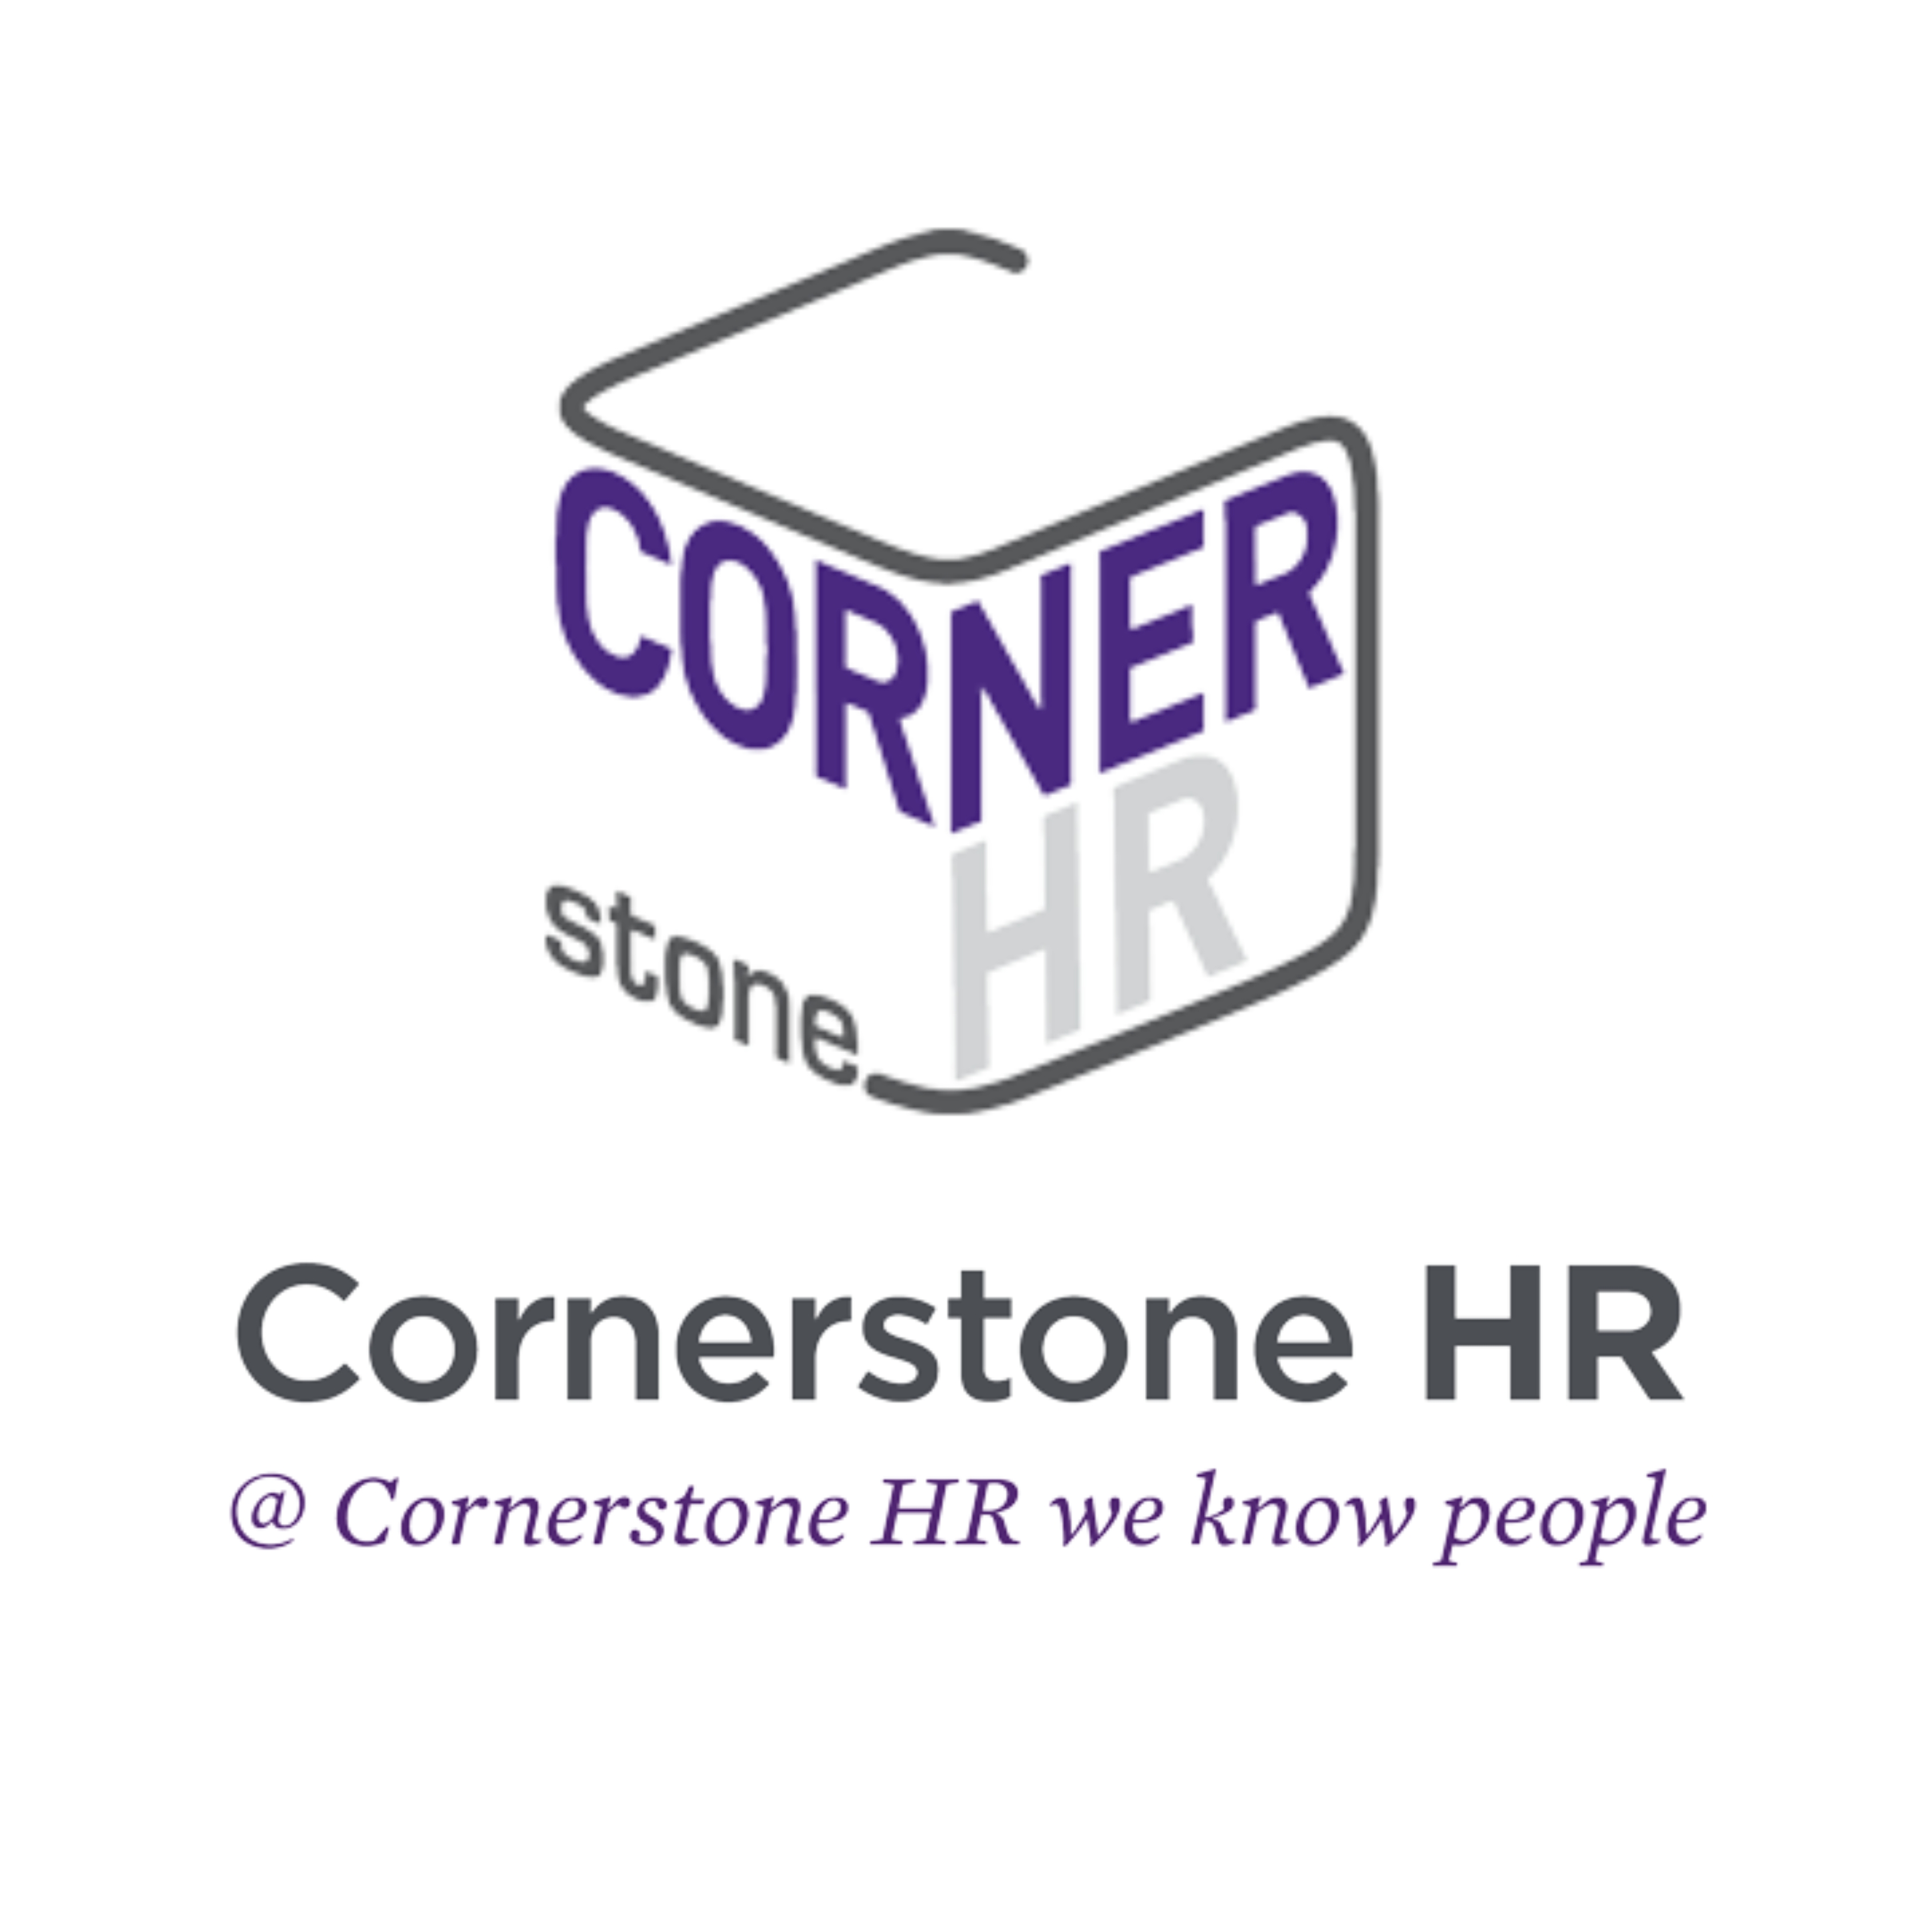  Cornerstone HR